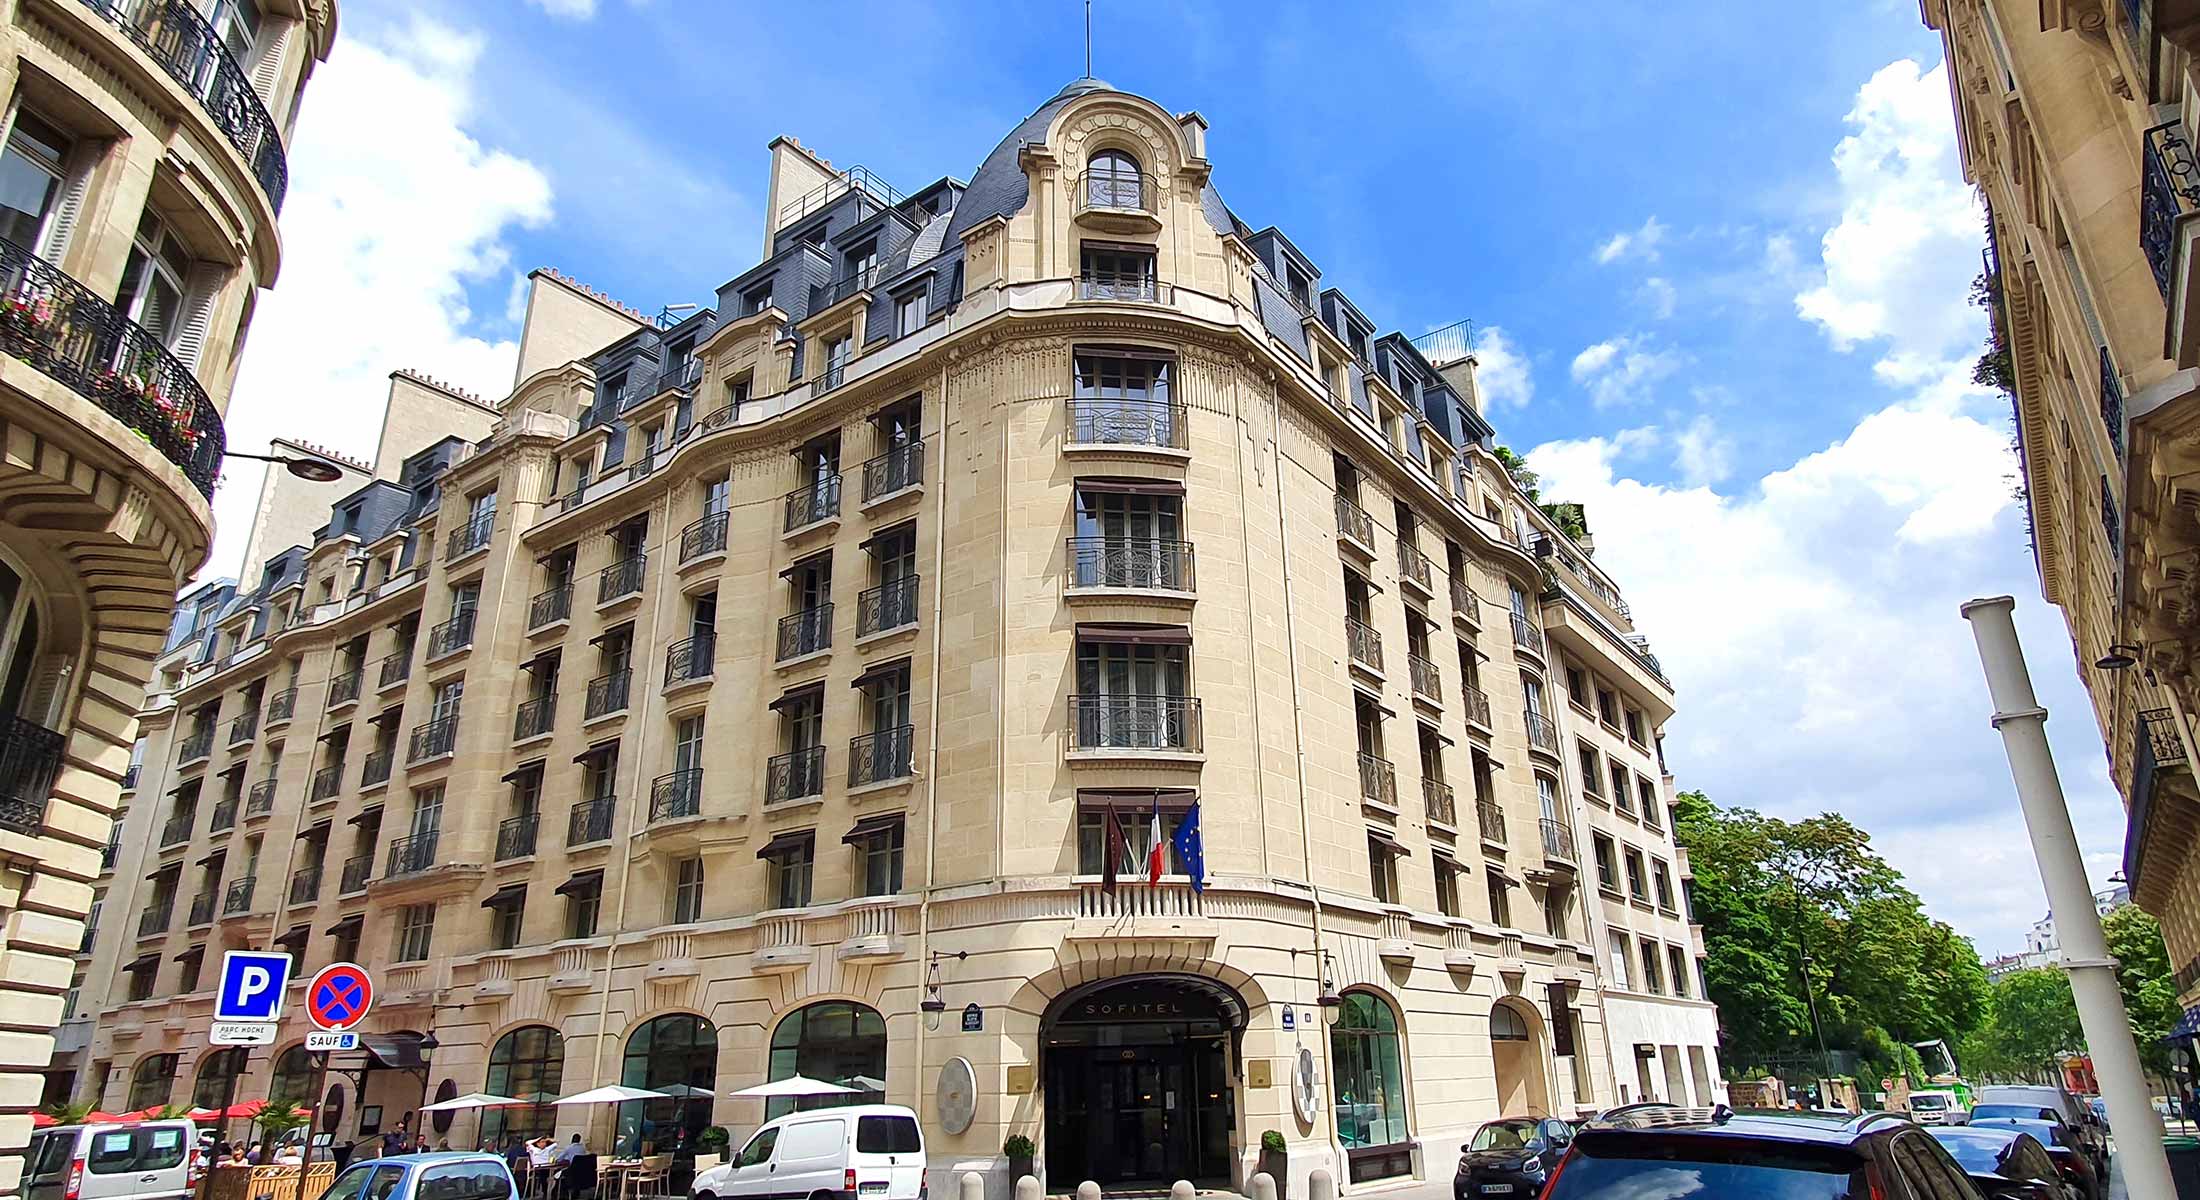 Sofitel Arc de triomphe - Hôtel Sofitel Paris Arc de Triomphe